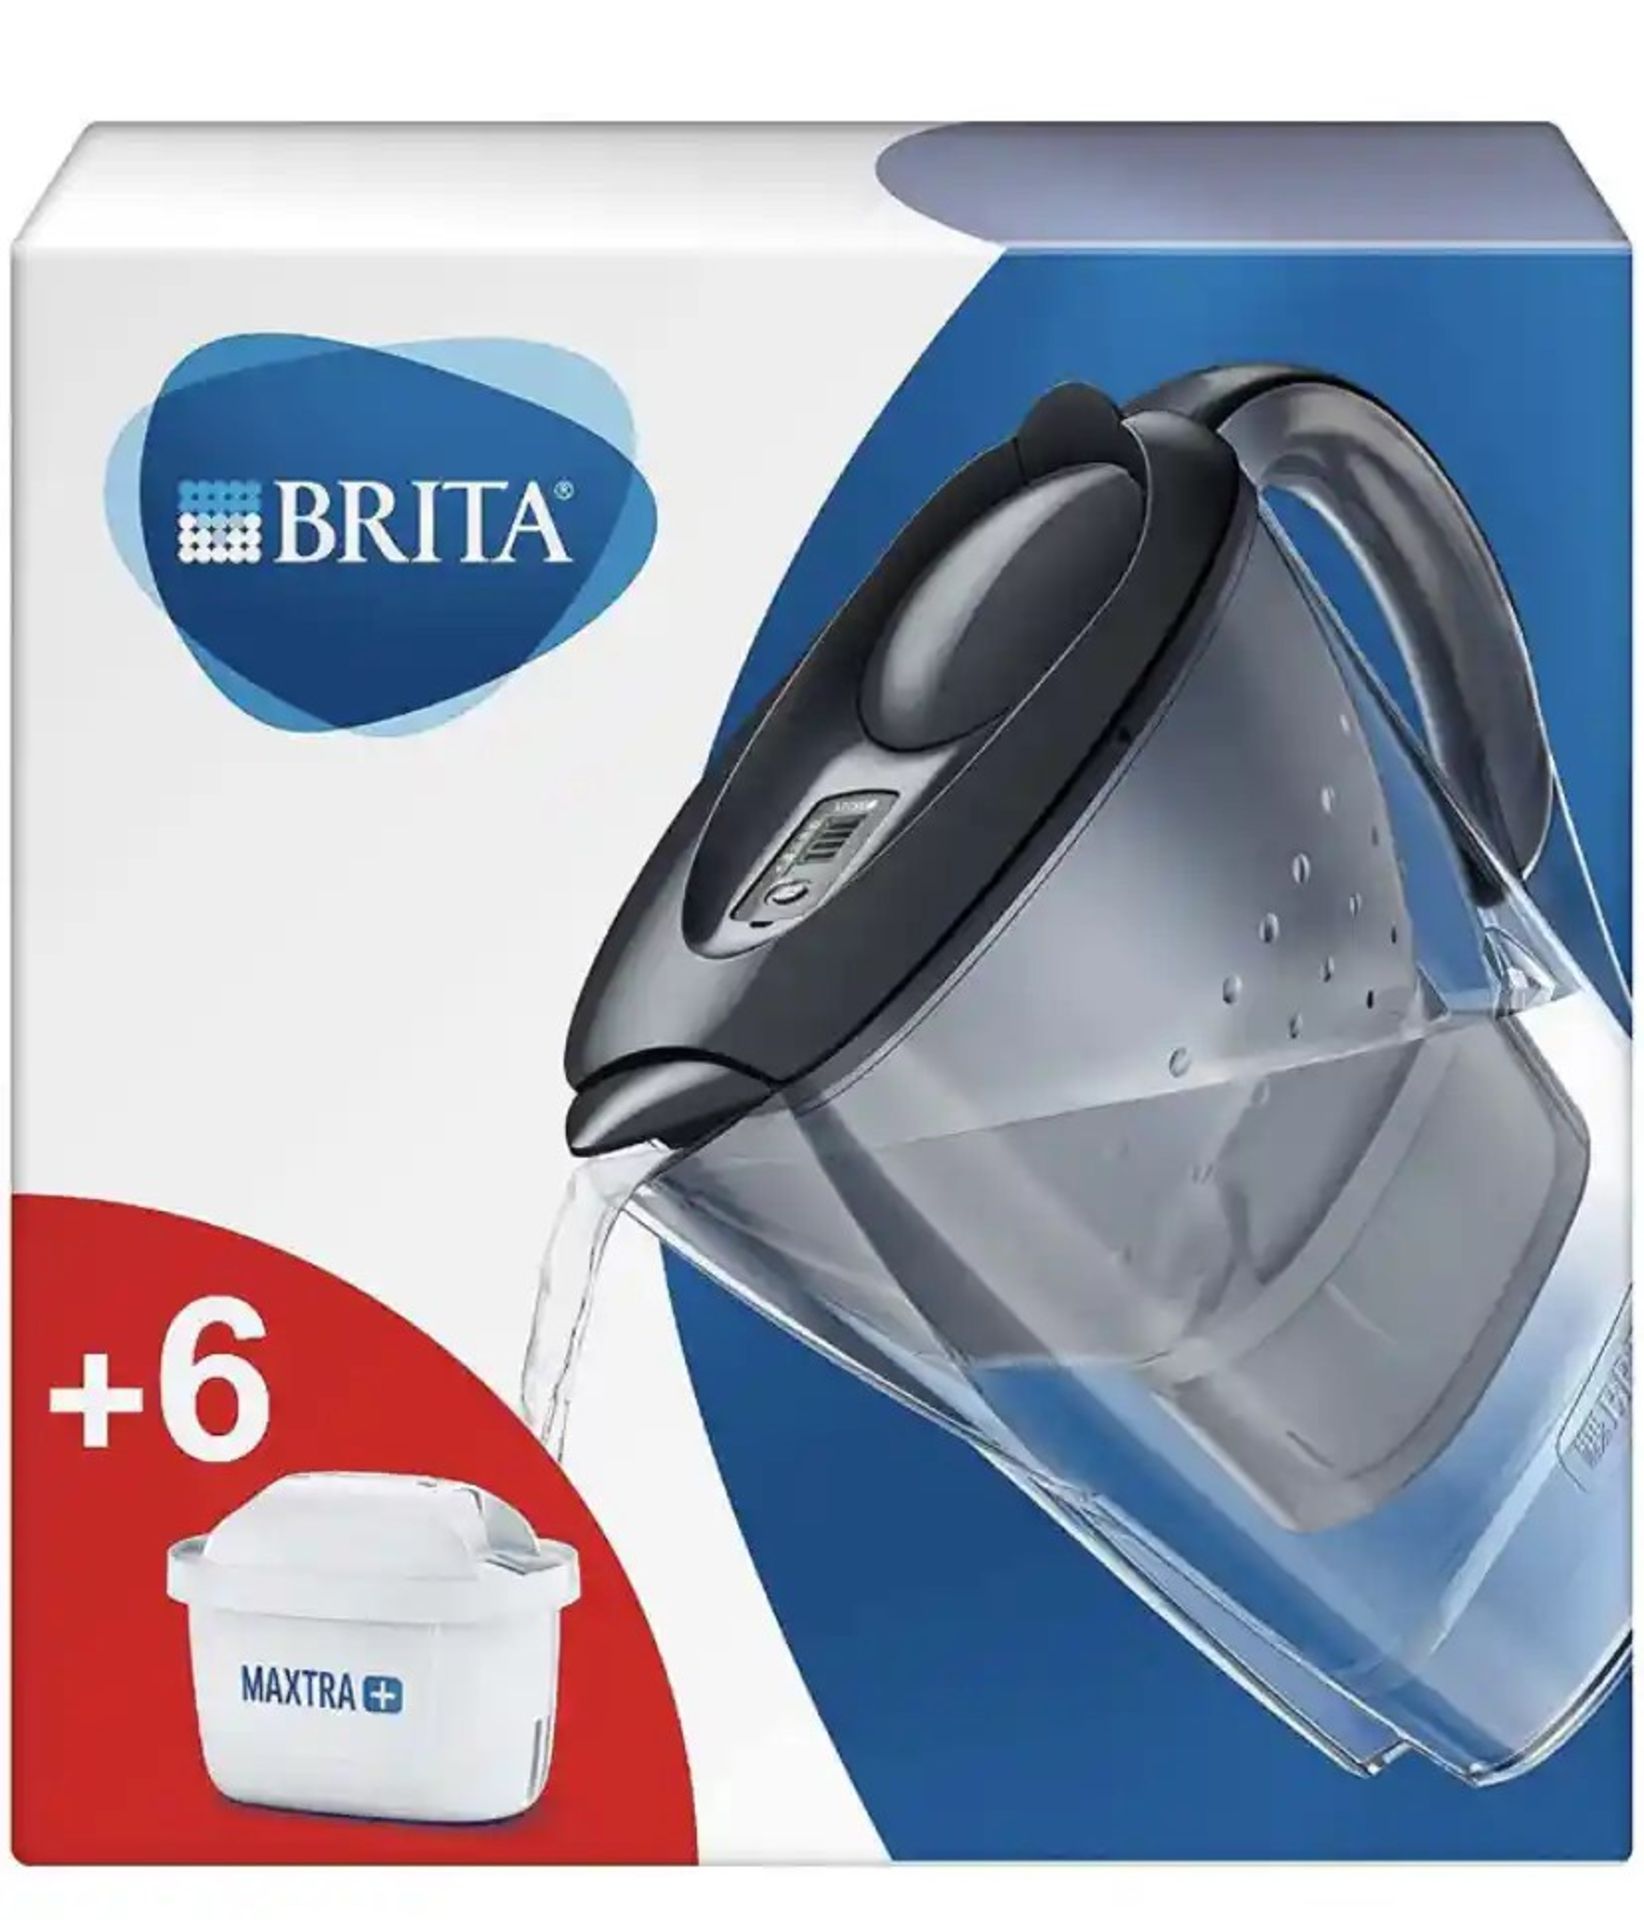 RRP - £18.98 BRITA Marella fridge water filter jug for reduction of chlorine